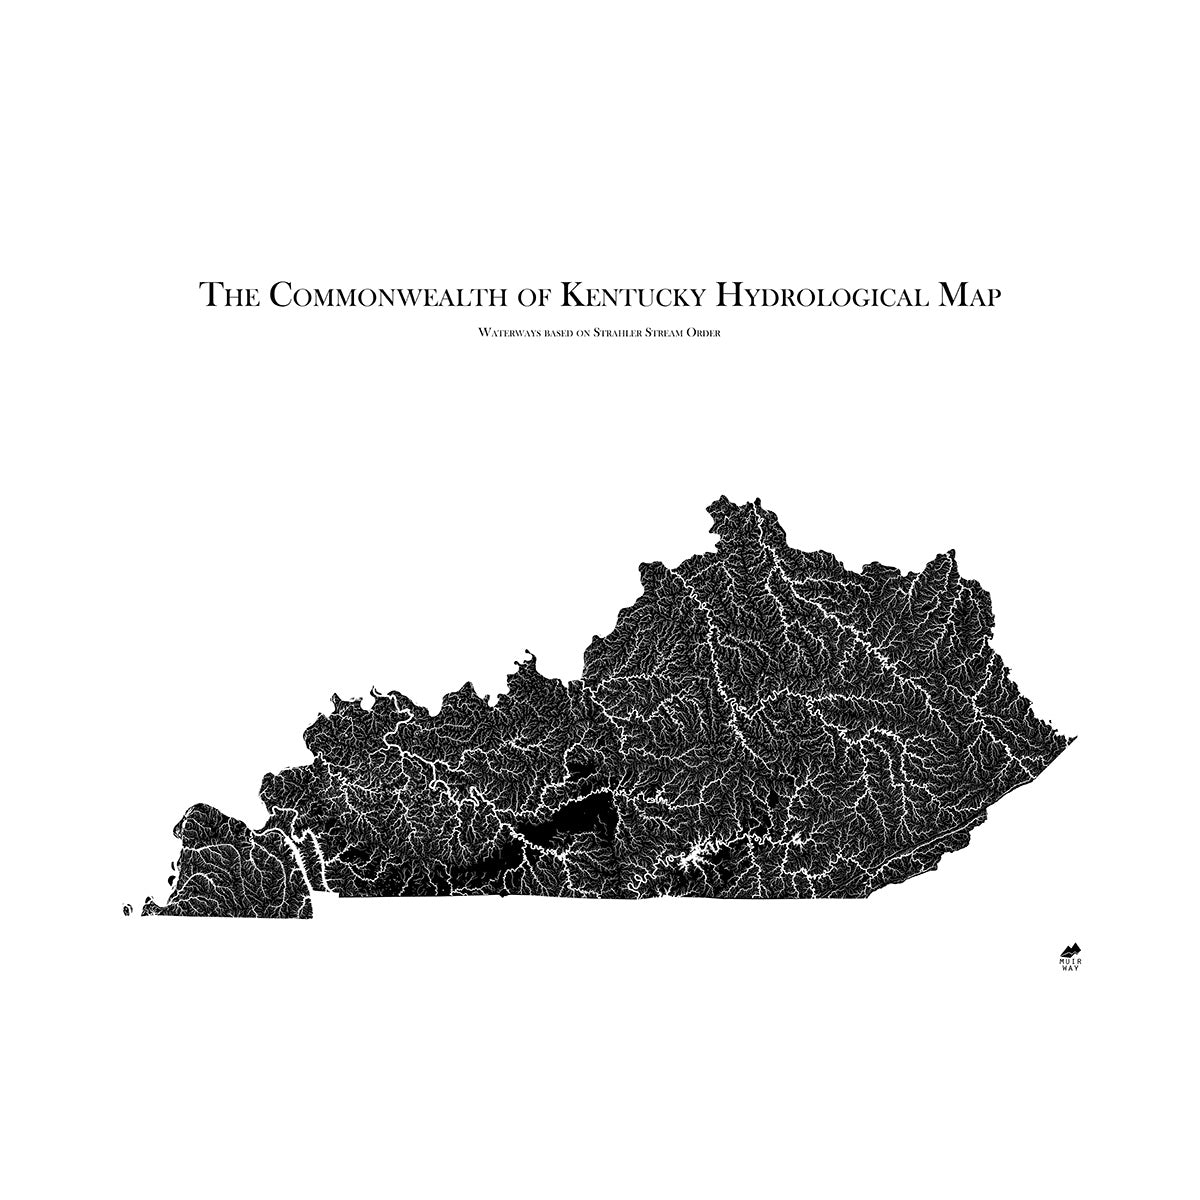 Kentucky Hydrological Map